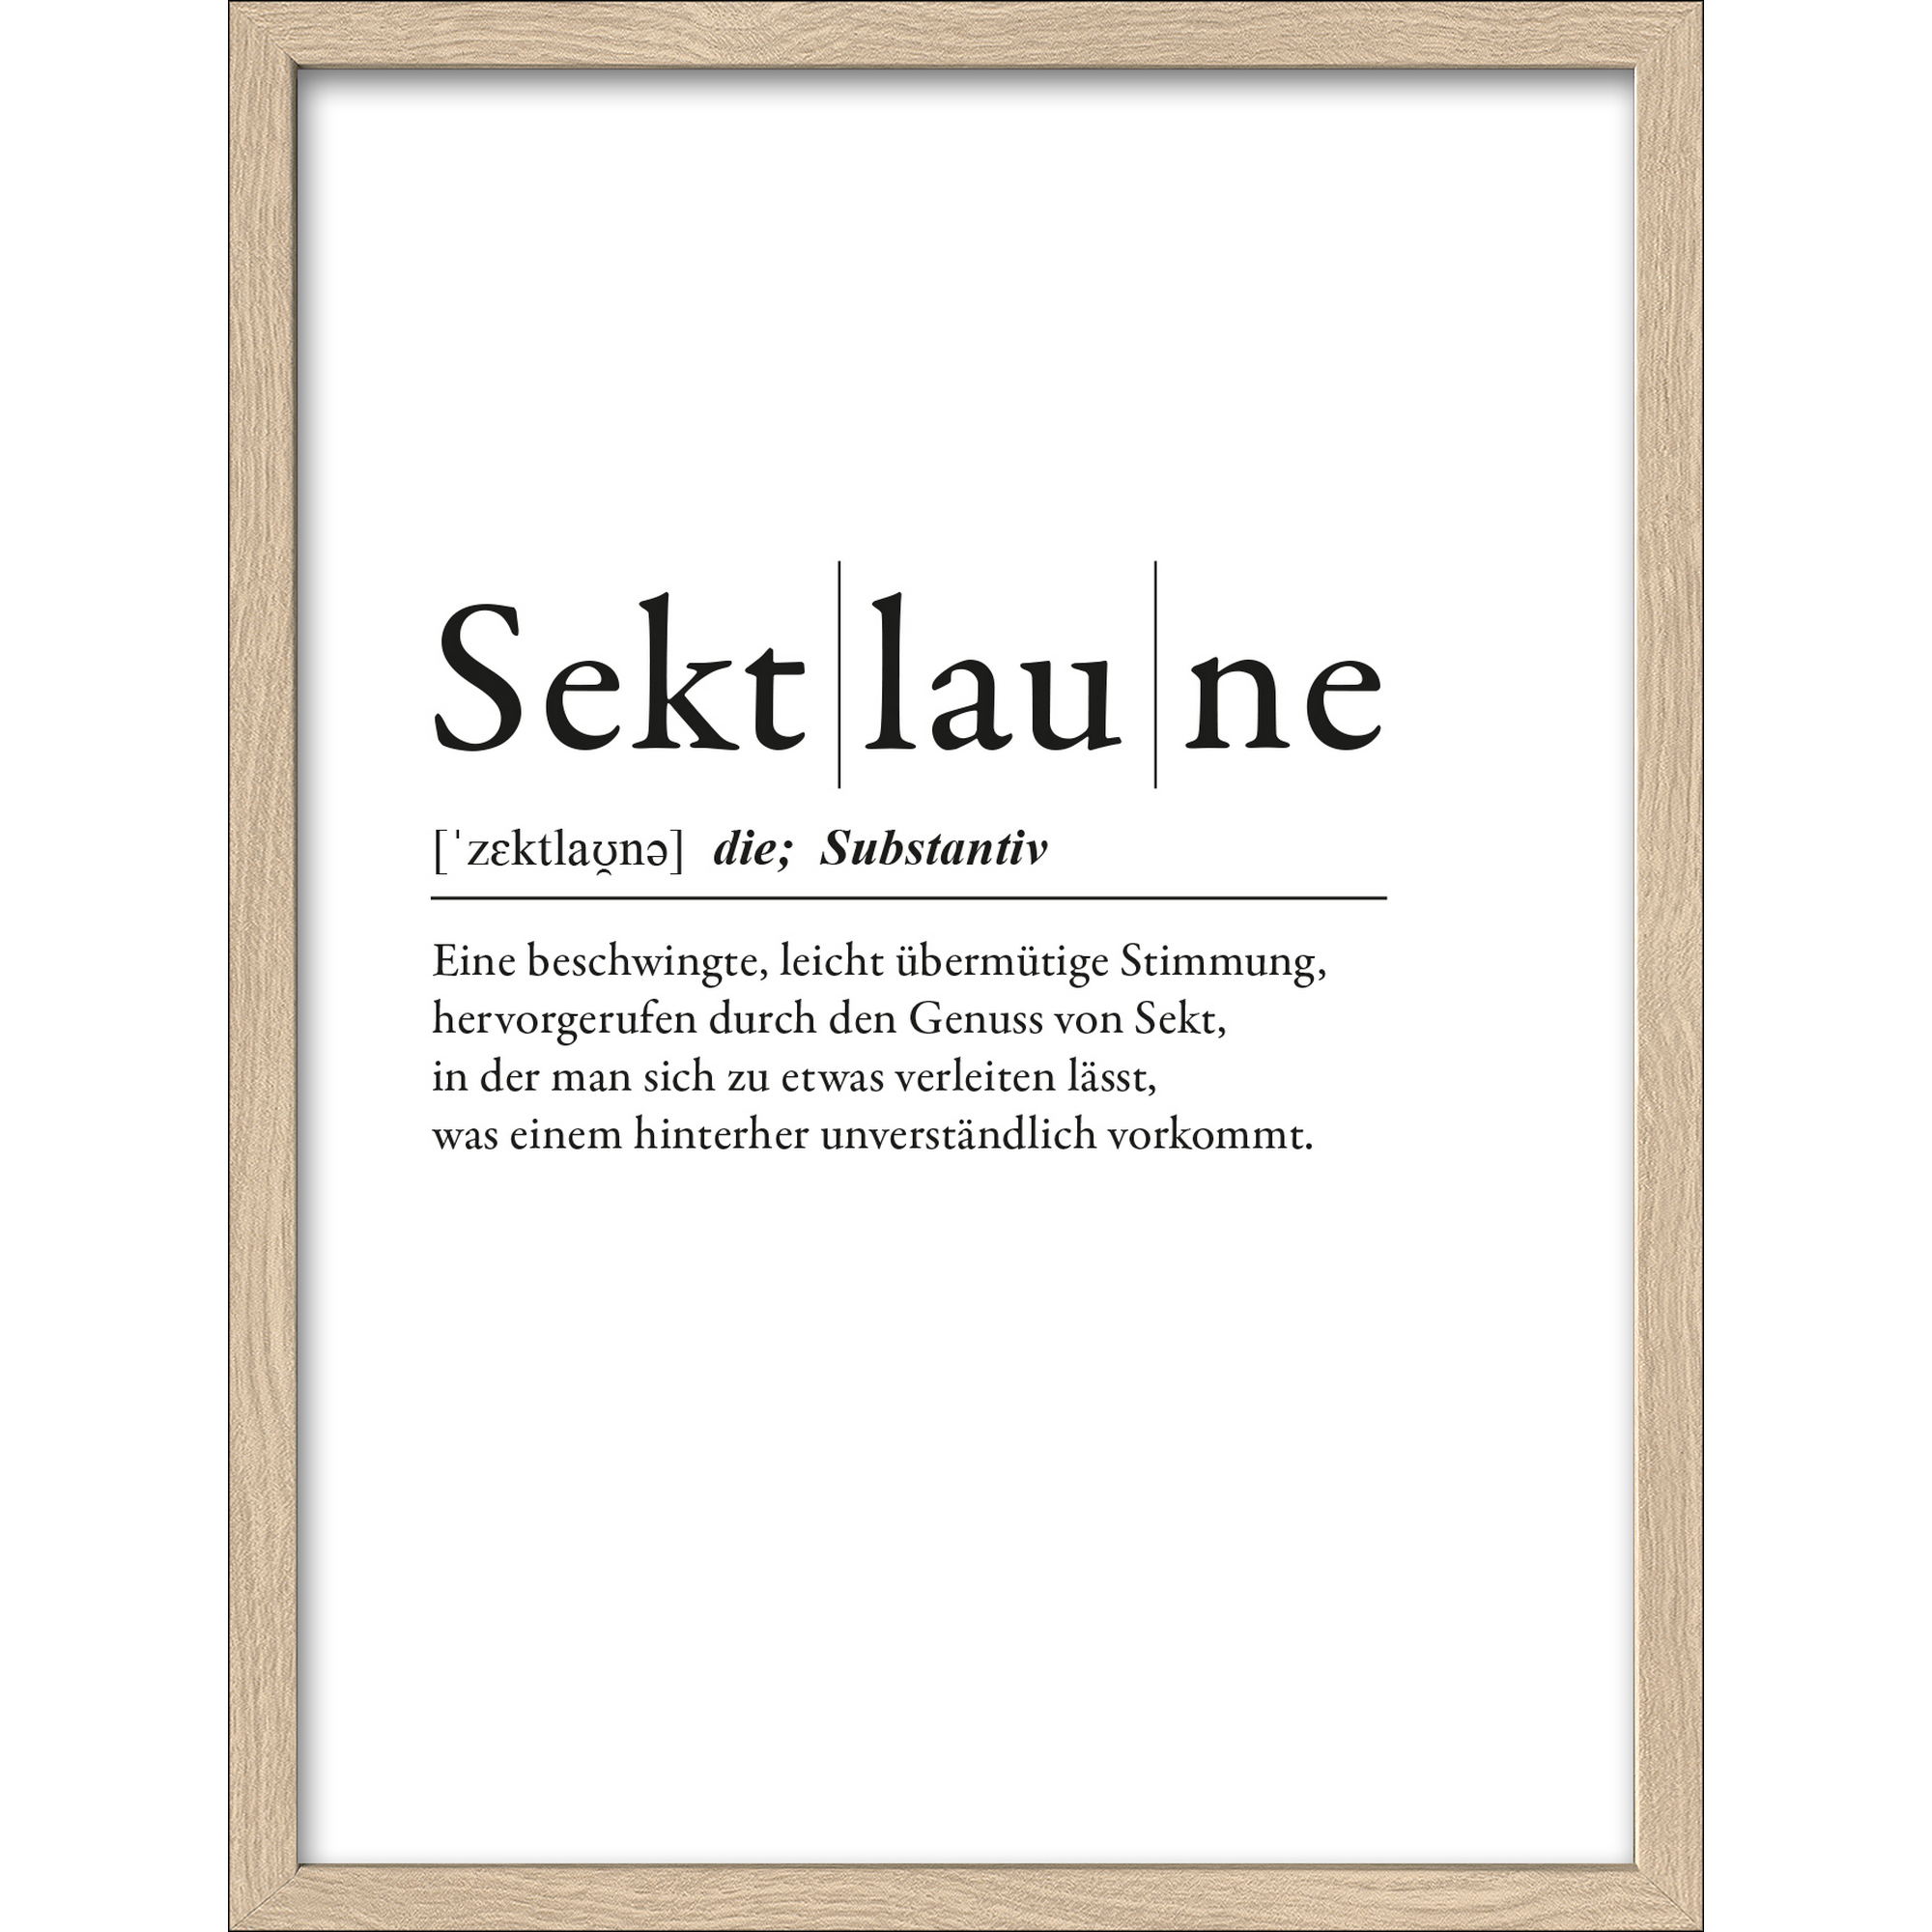 Kunstdruck Framed-Art 'Sektlaune' 33 x 43 cm + product picture